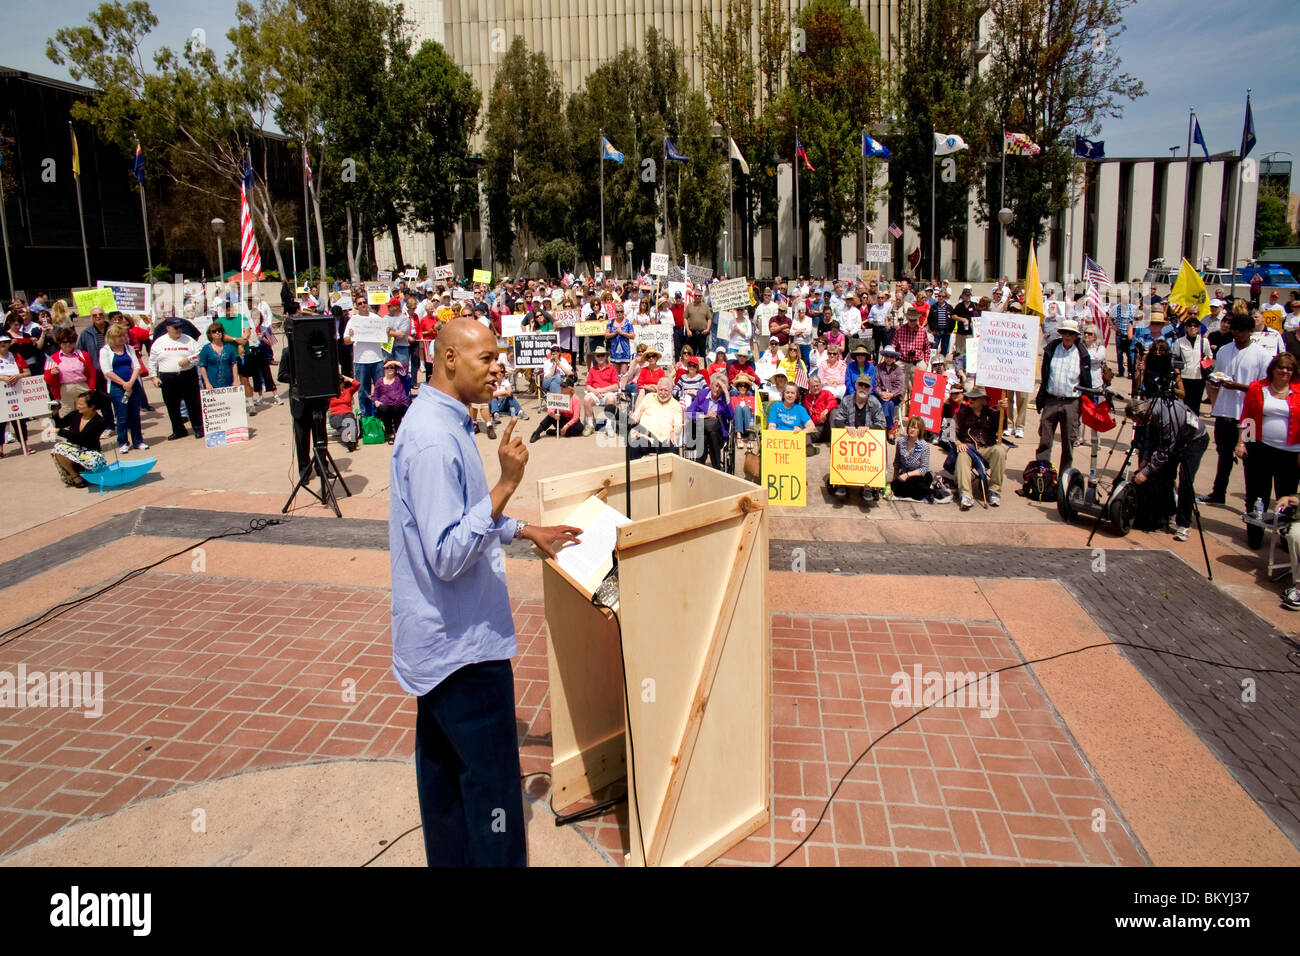 La colère du président américain africain sermonne la foule à une "Tea Party" le 15 avril (jour de l'impôt) à Santa Ana, Californie. Banque D'Images